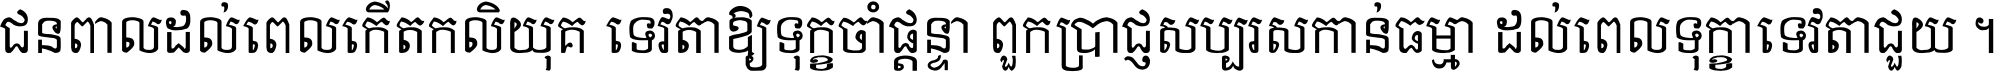 Khmer Chhay Text 1